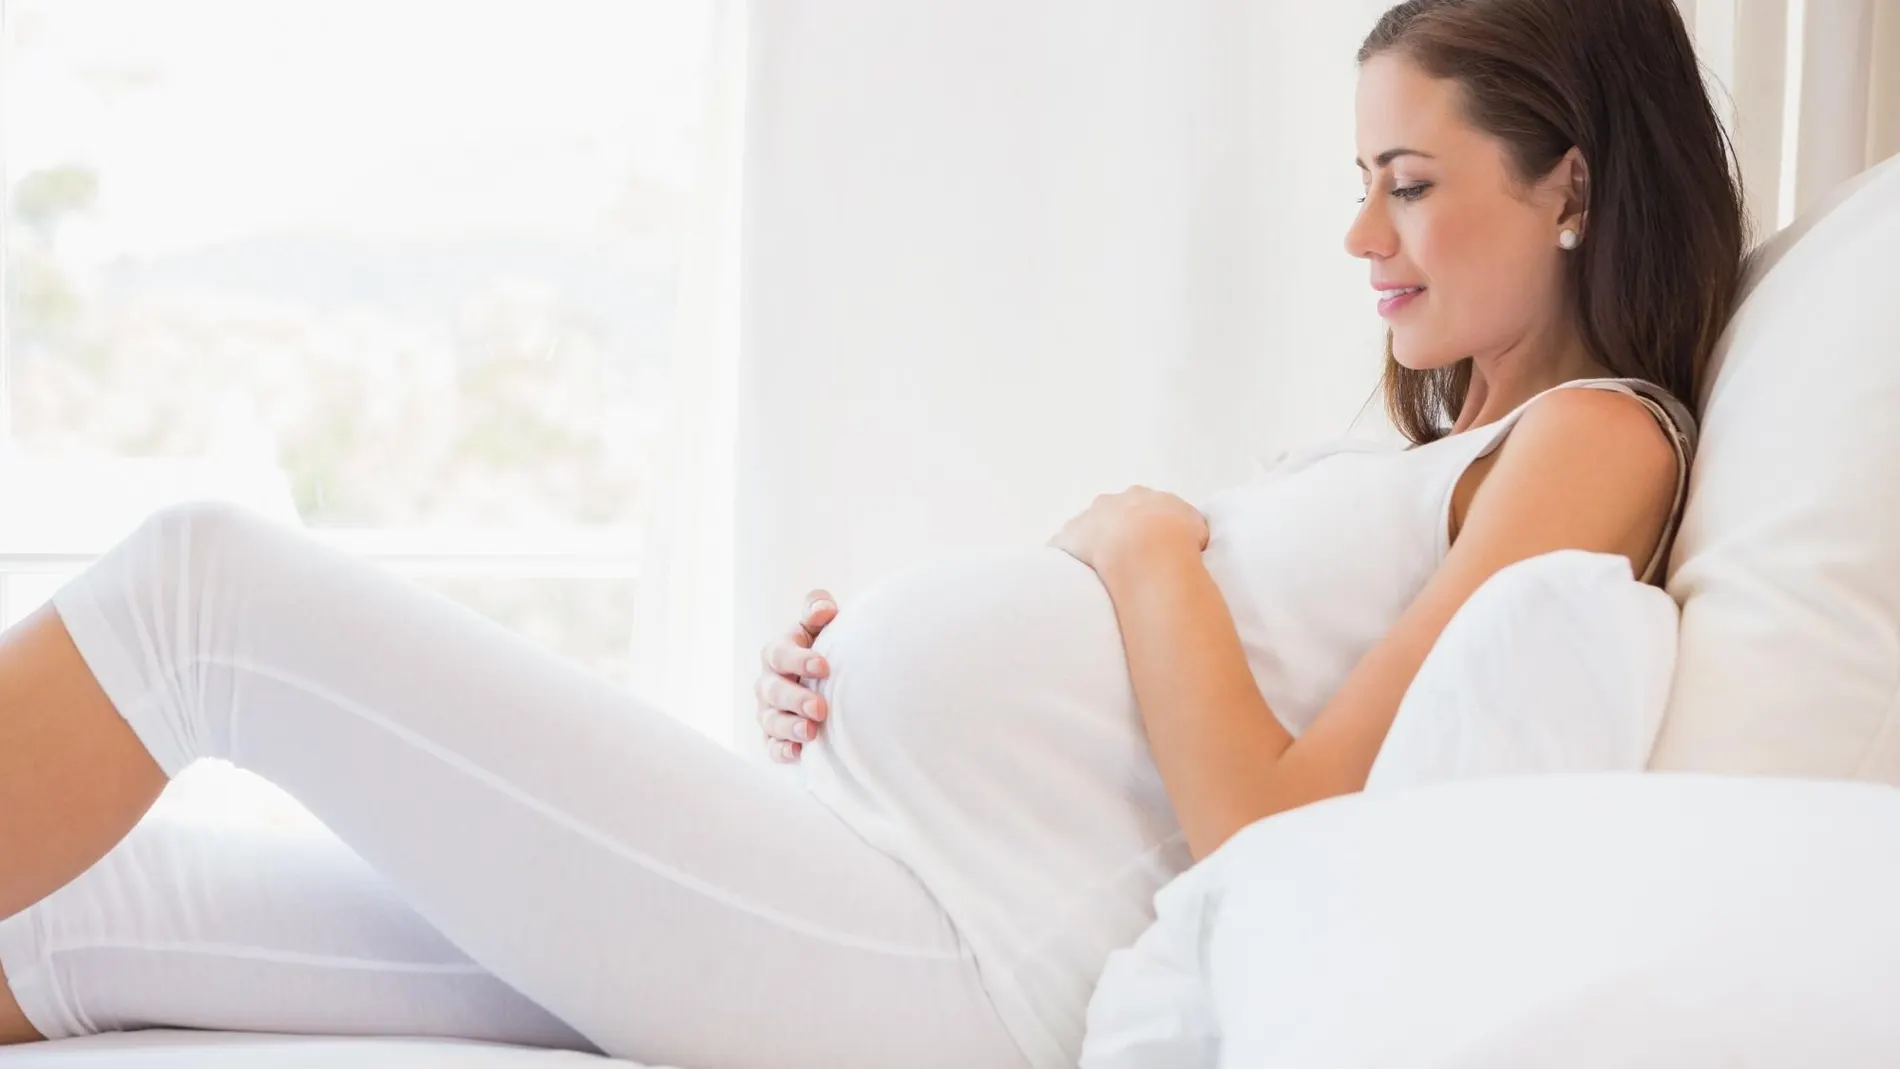 18 medidas imprescindibles para un embarazo seguro: ¡Más vale prevenir que lamentar!